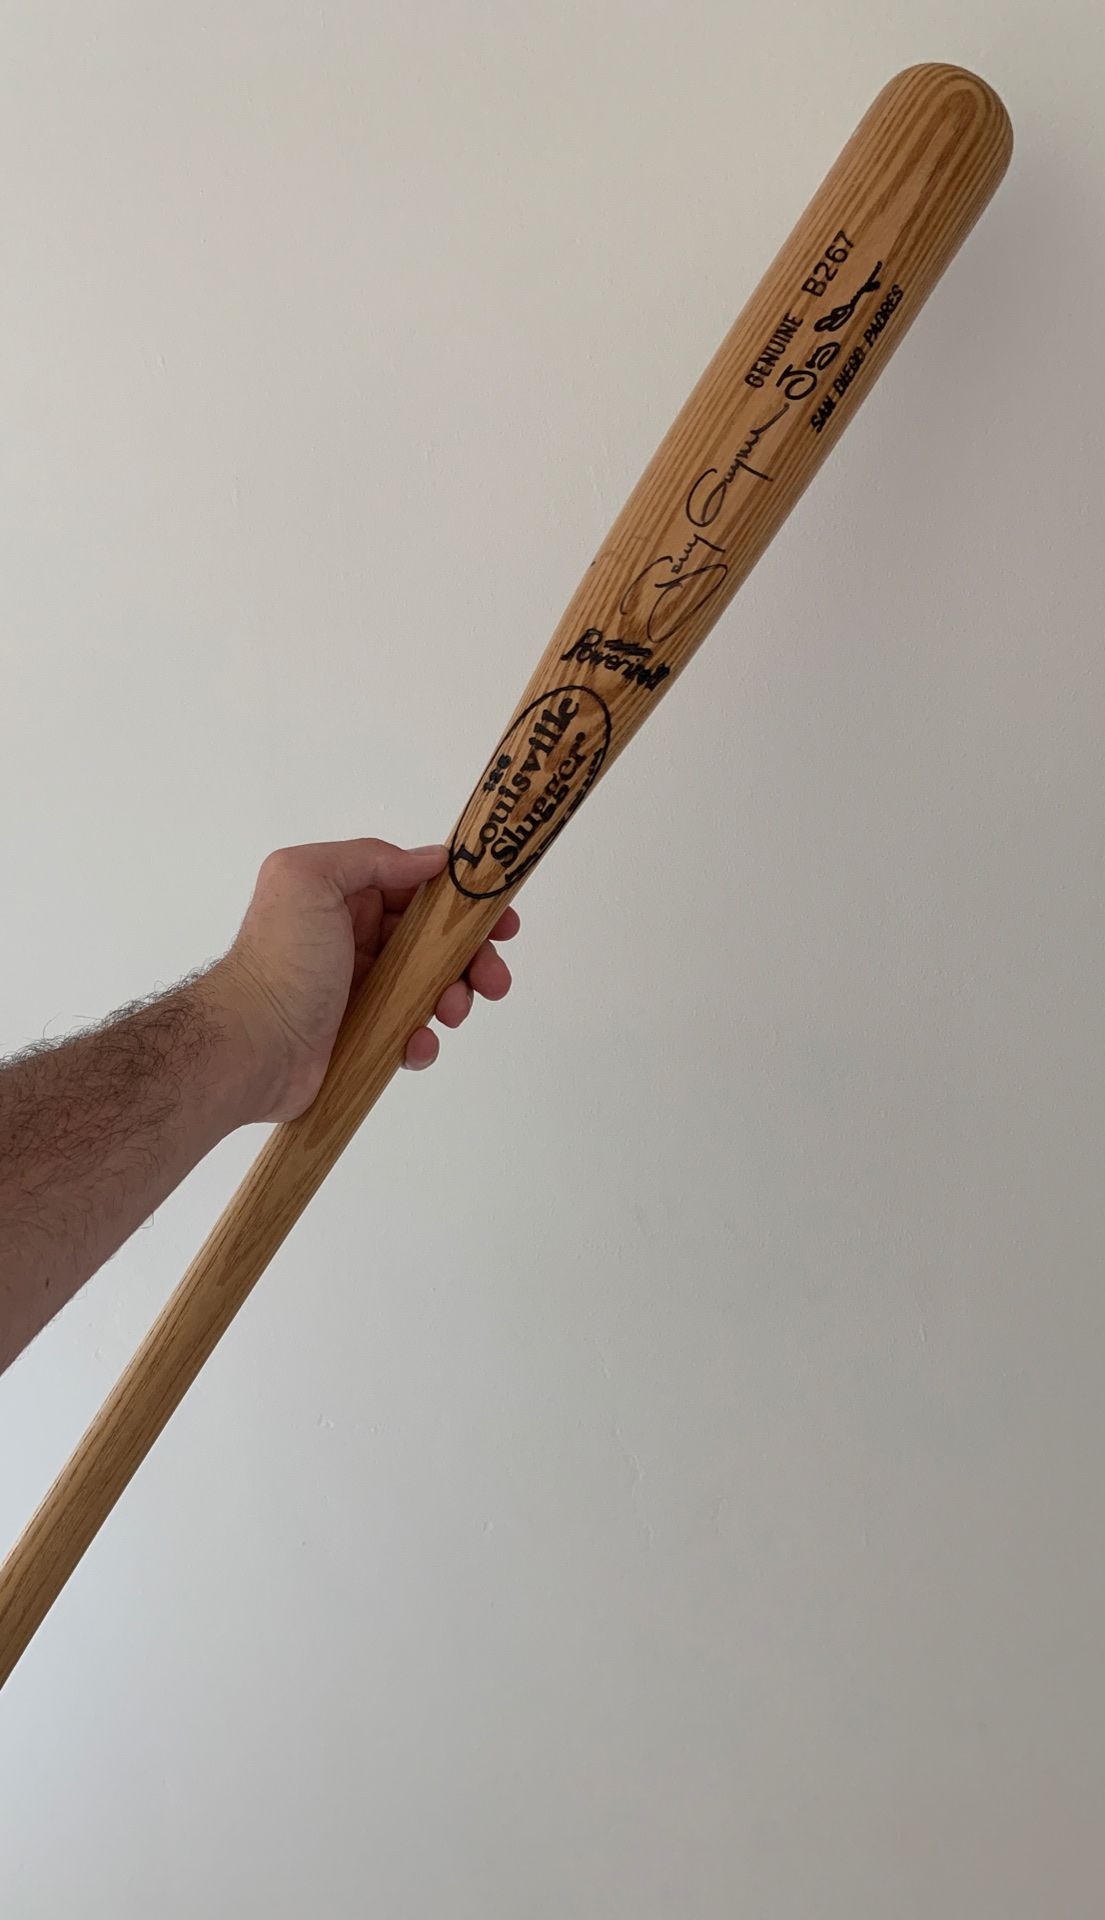 Tony Gwynn Authentic Signed Baseball bat